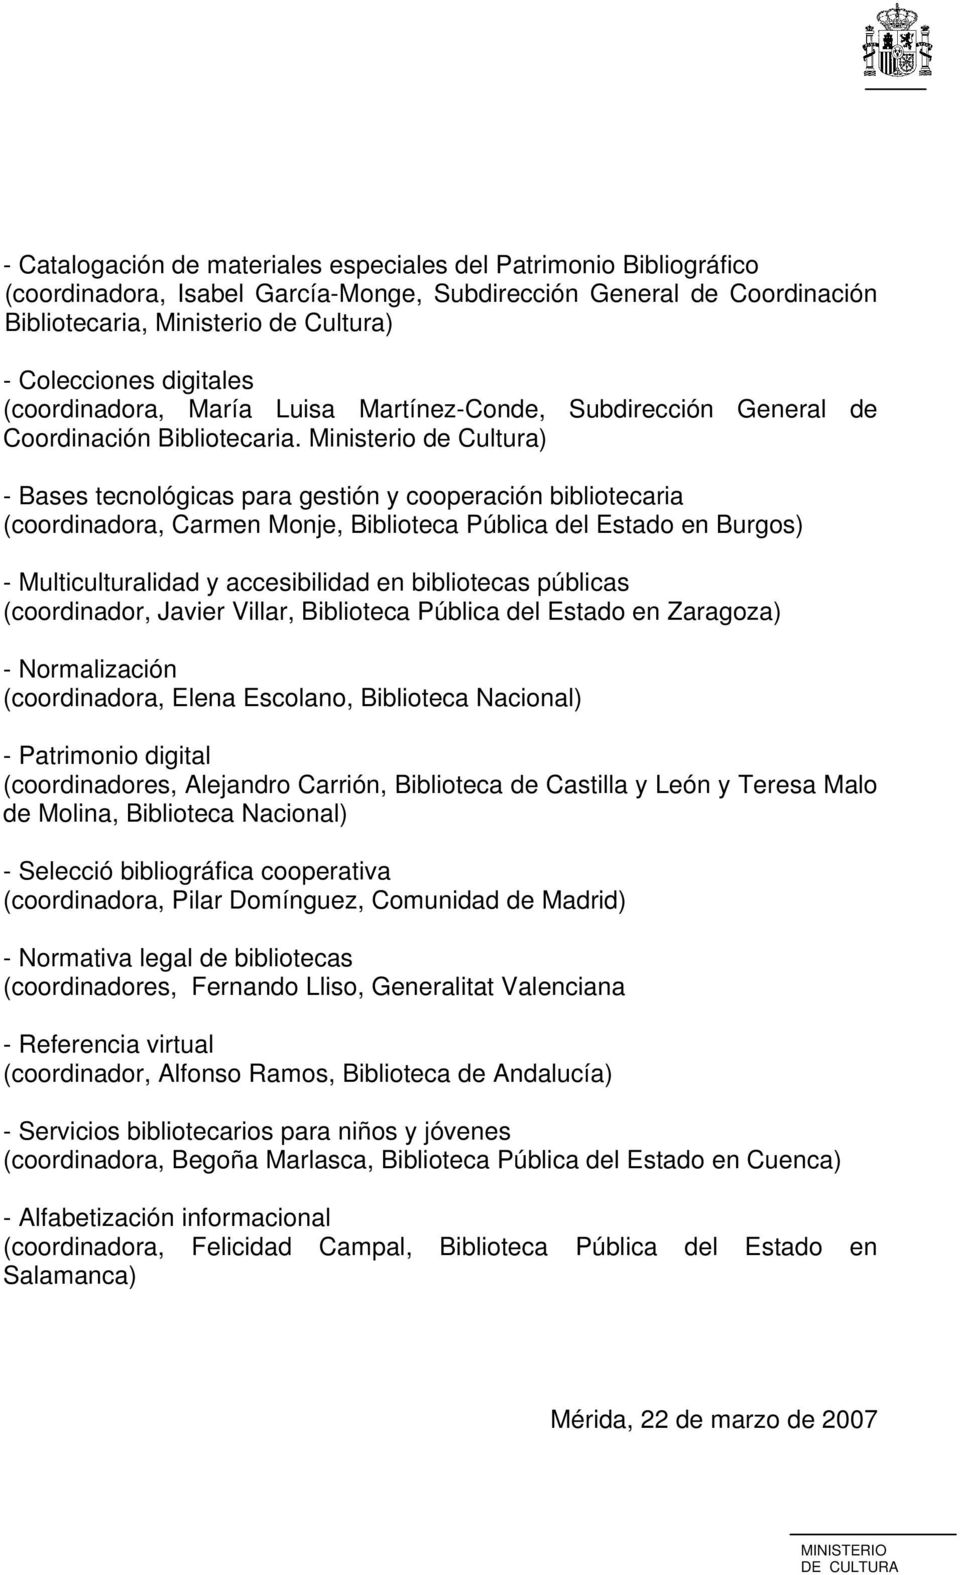 Ministerio de Cultura) - Bases tecnológicas para gestión y cooperación bibliotecaria (coordinadora, Carmen Monje, Biblioteca Pública del Estado en Burgos) - Multiculturalidad y accesibilidad en